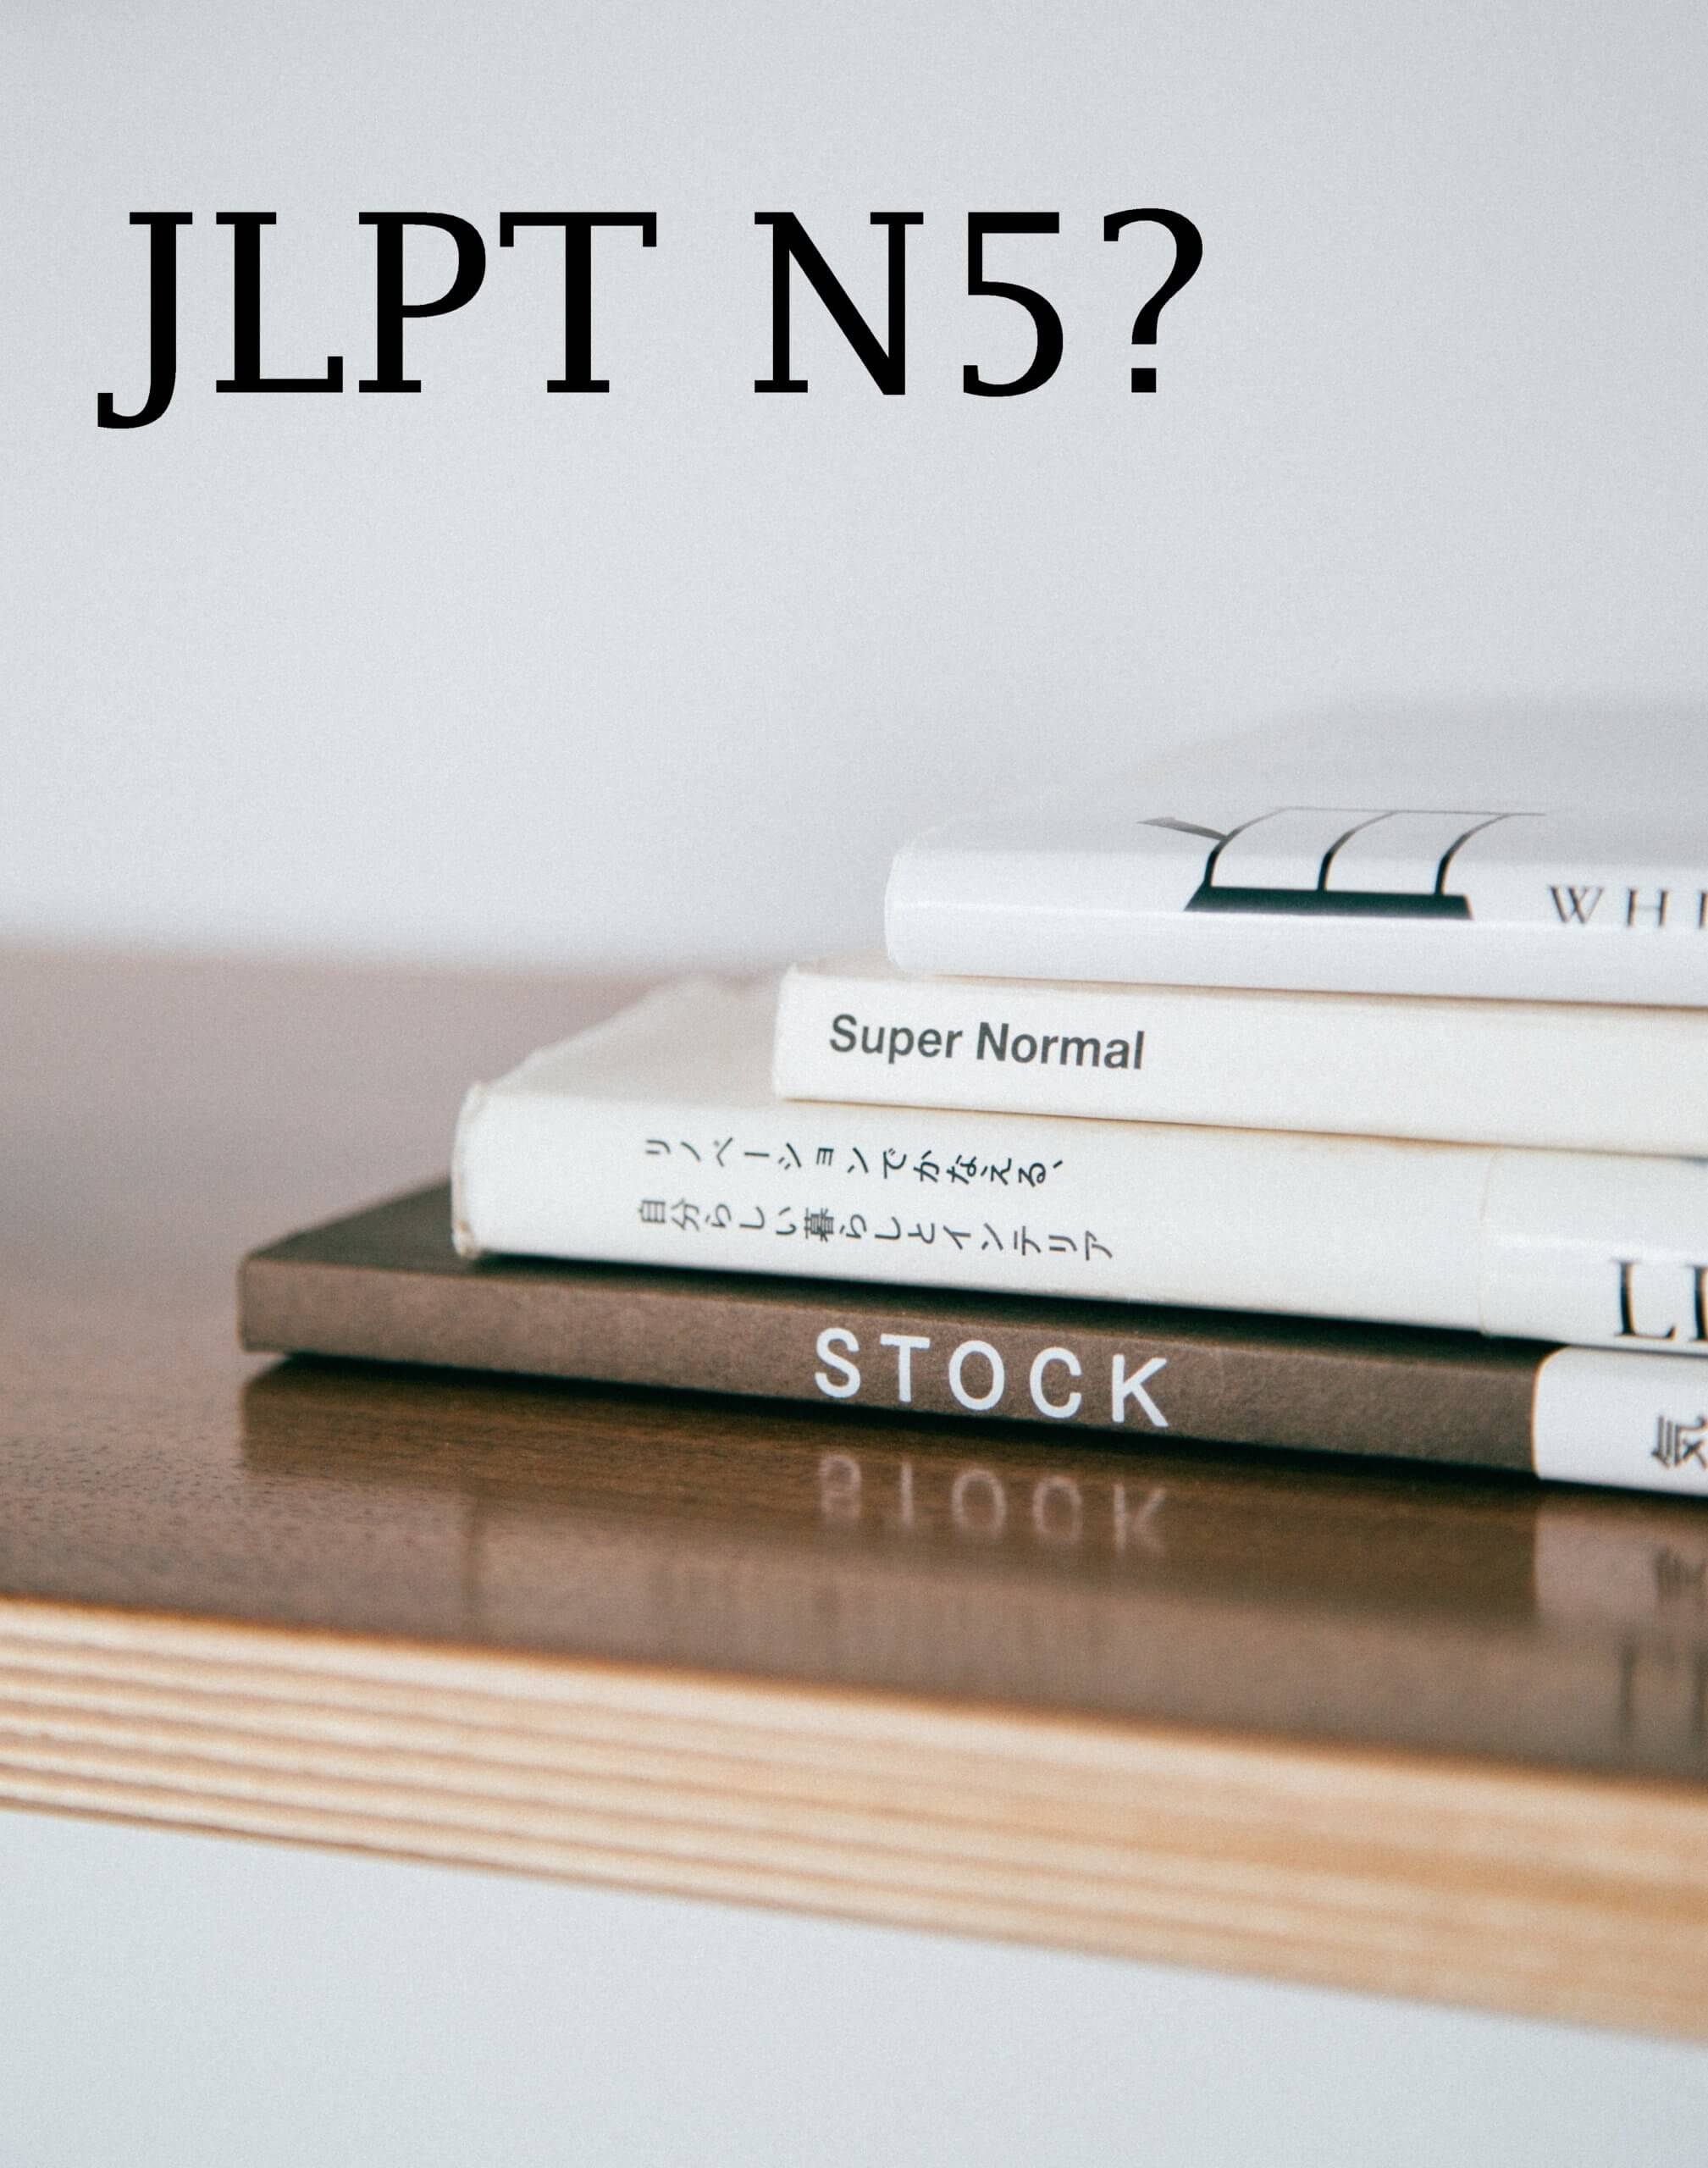 Seperti Apa Sih Tes Bahasa Jepang “JLPT N5”?